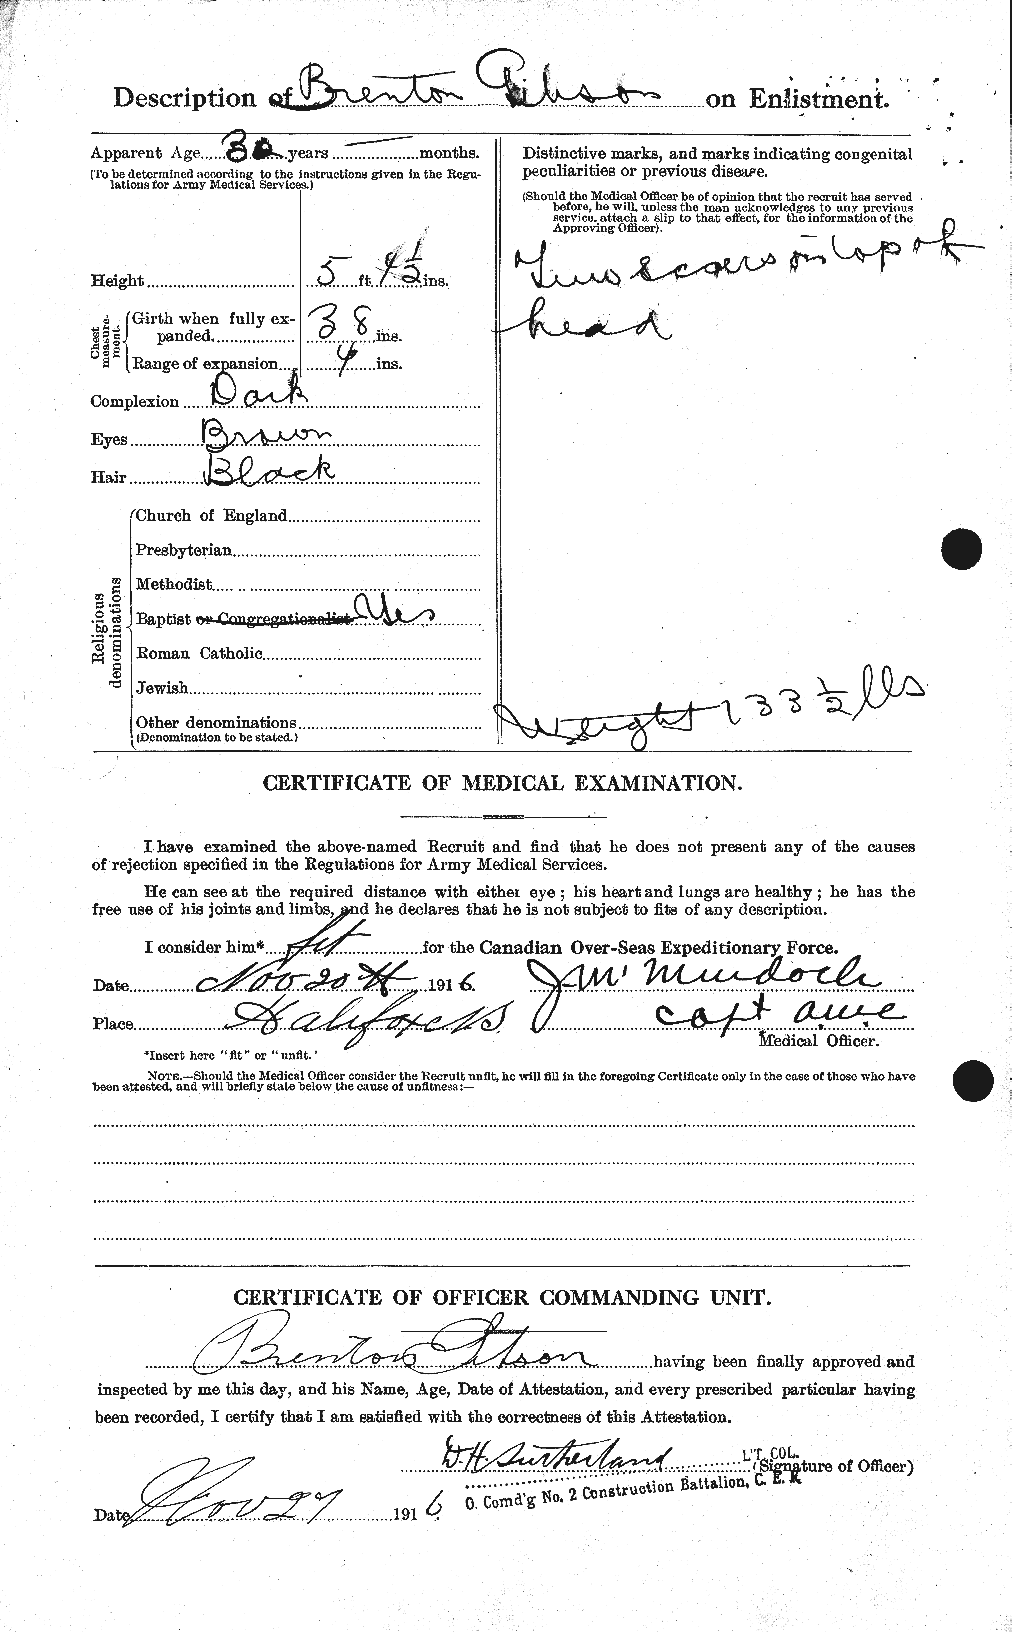 Dossiers du Personnel de la Première Guerre mondiale - CEC 347192b